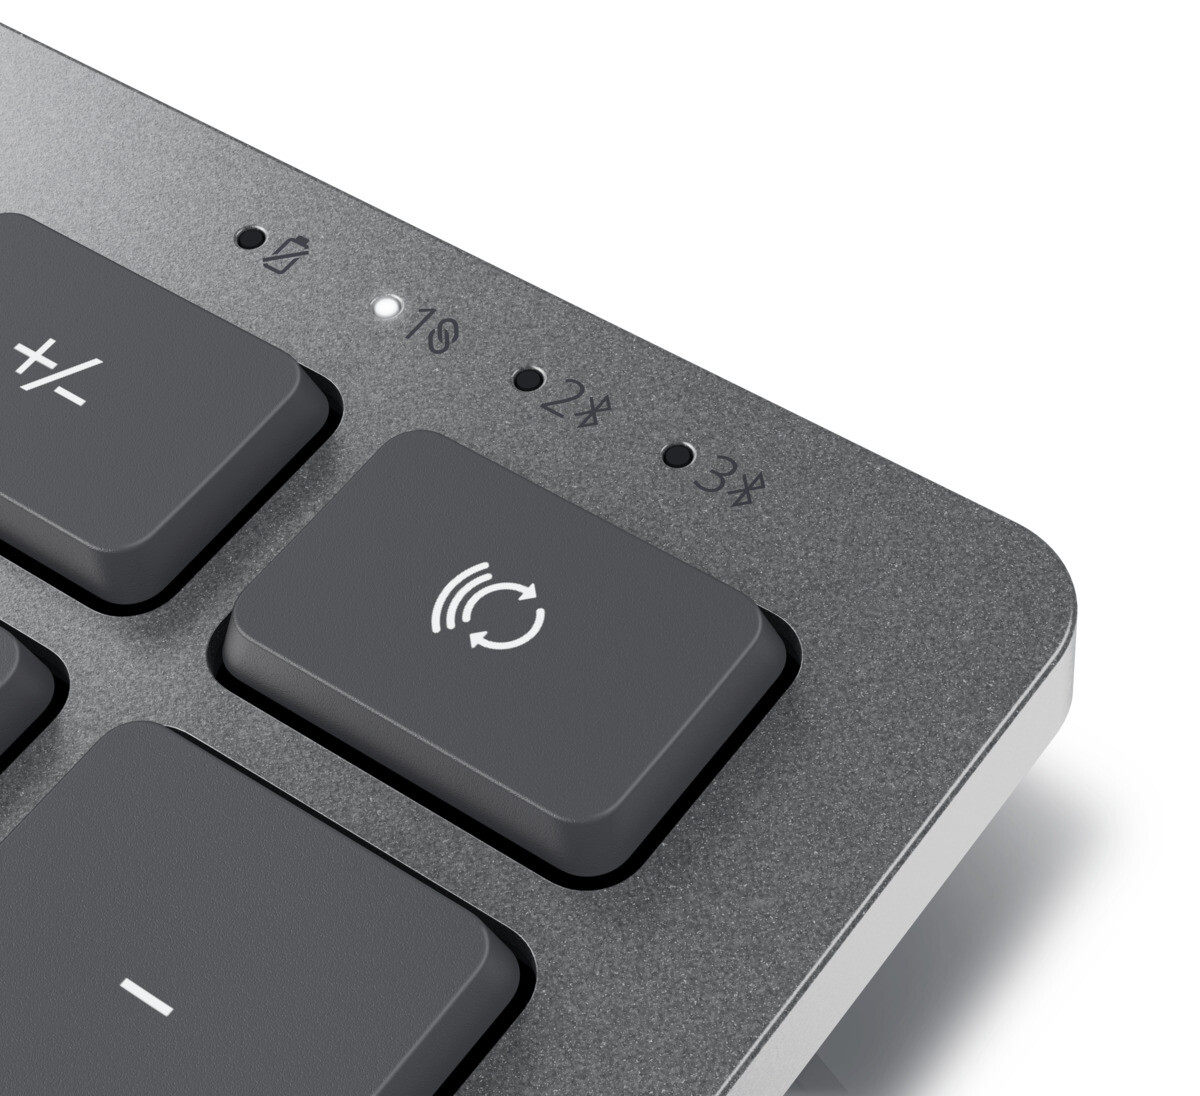 Dell-KM7120W-Mehrgerate-Wireless-Tastatur-und-Maus